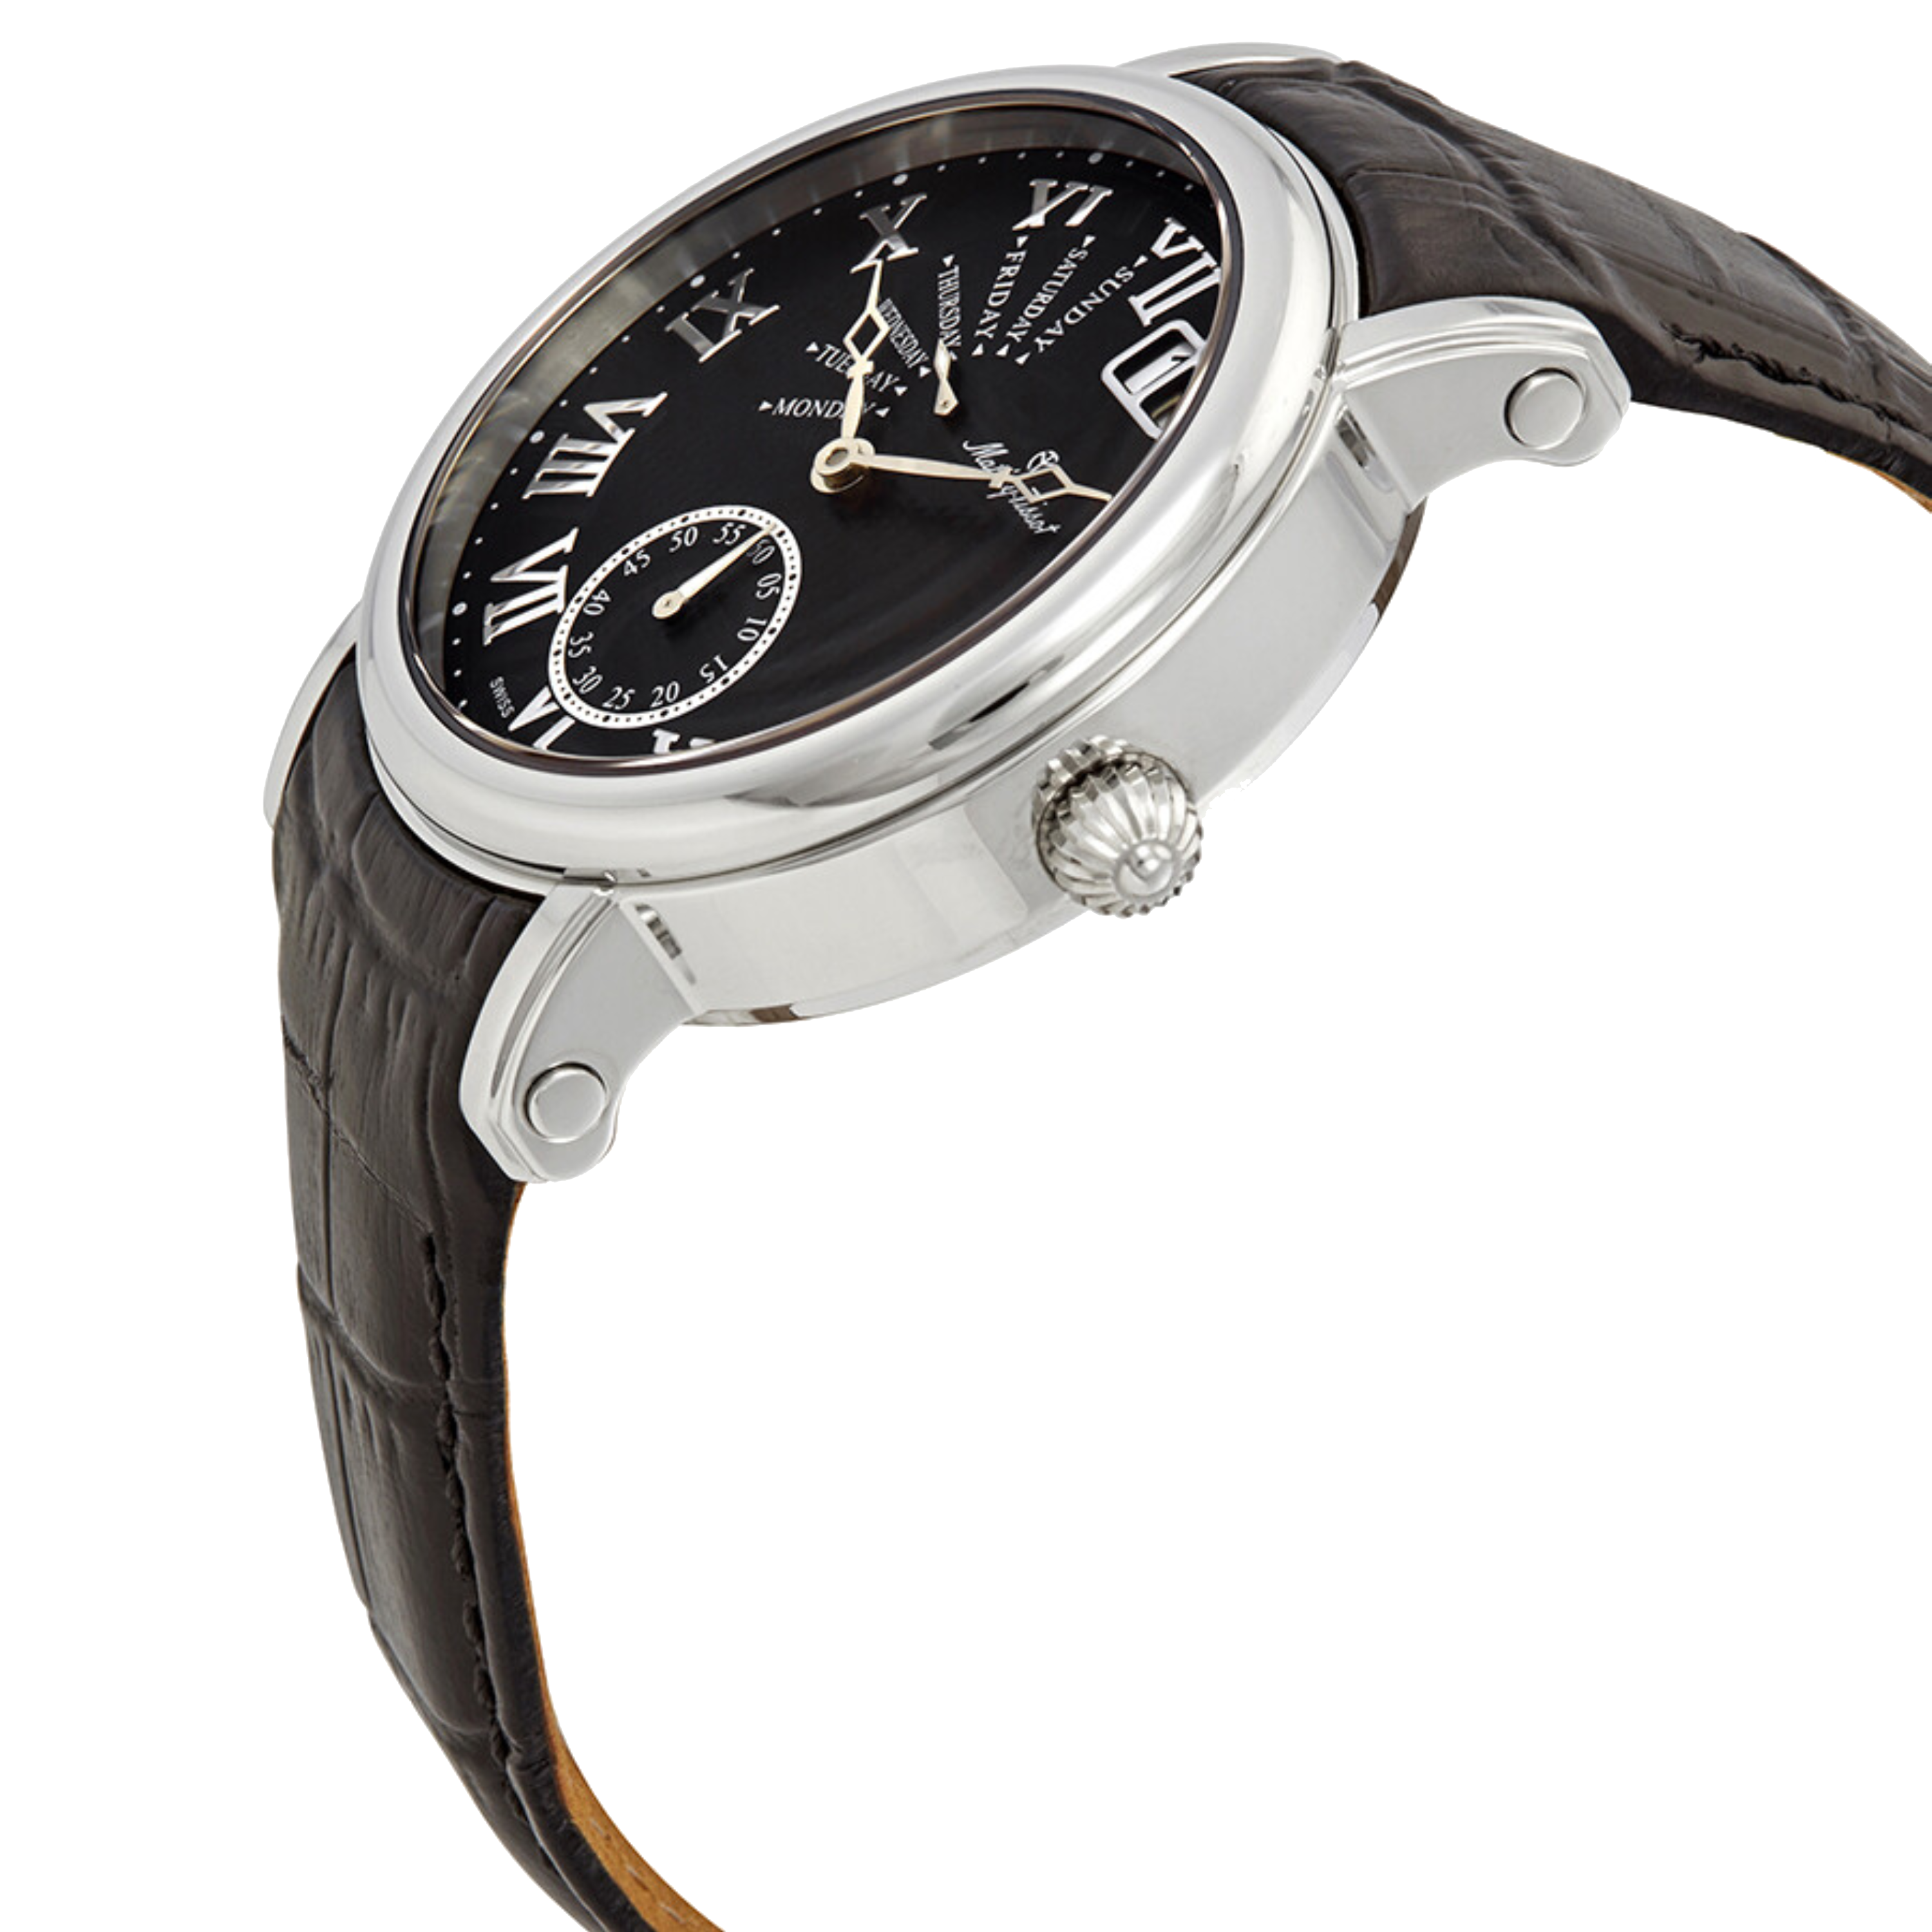 שעון יד לגבר Mathey Tissot H7020AN 43mm צבע שחור/עור שחור/זכוכית ספיר/רטרוגרד - אחריות לשנתיים